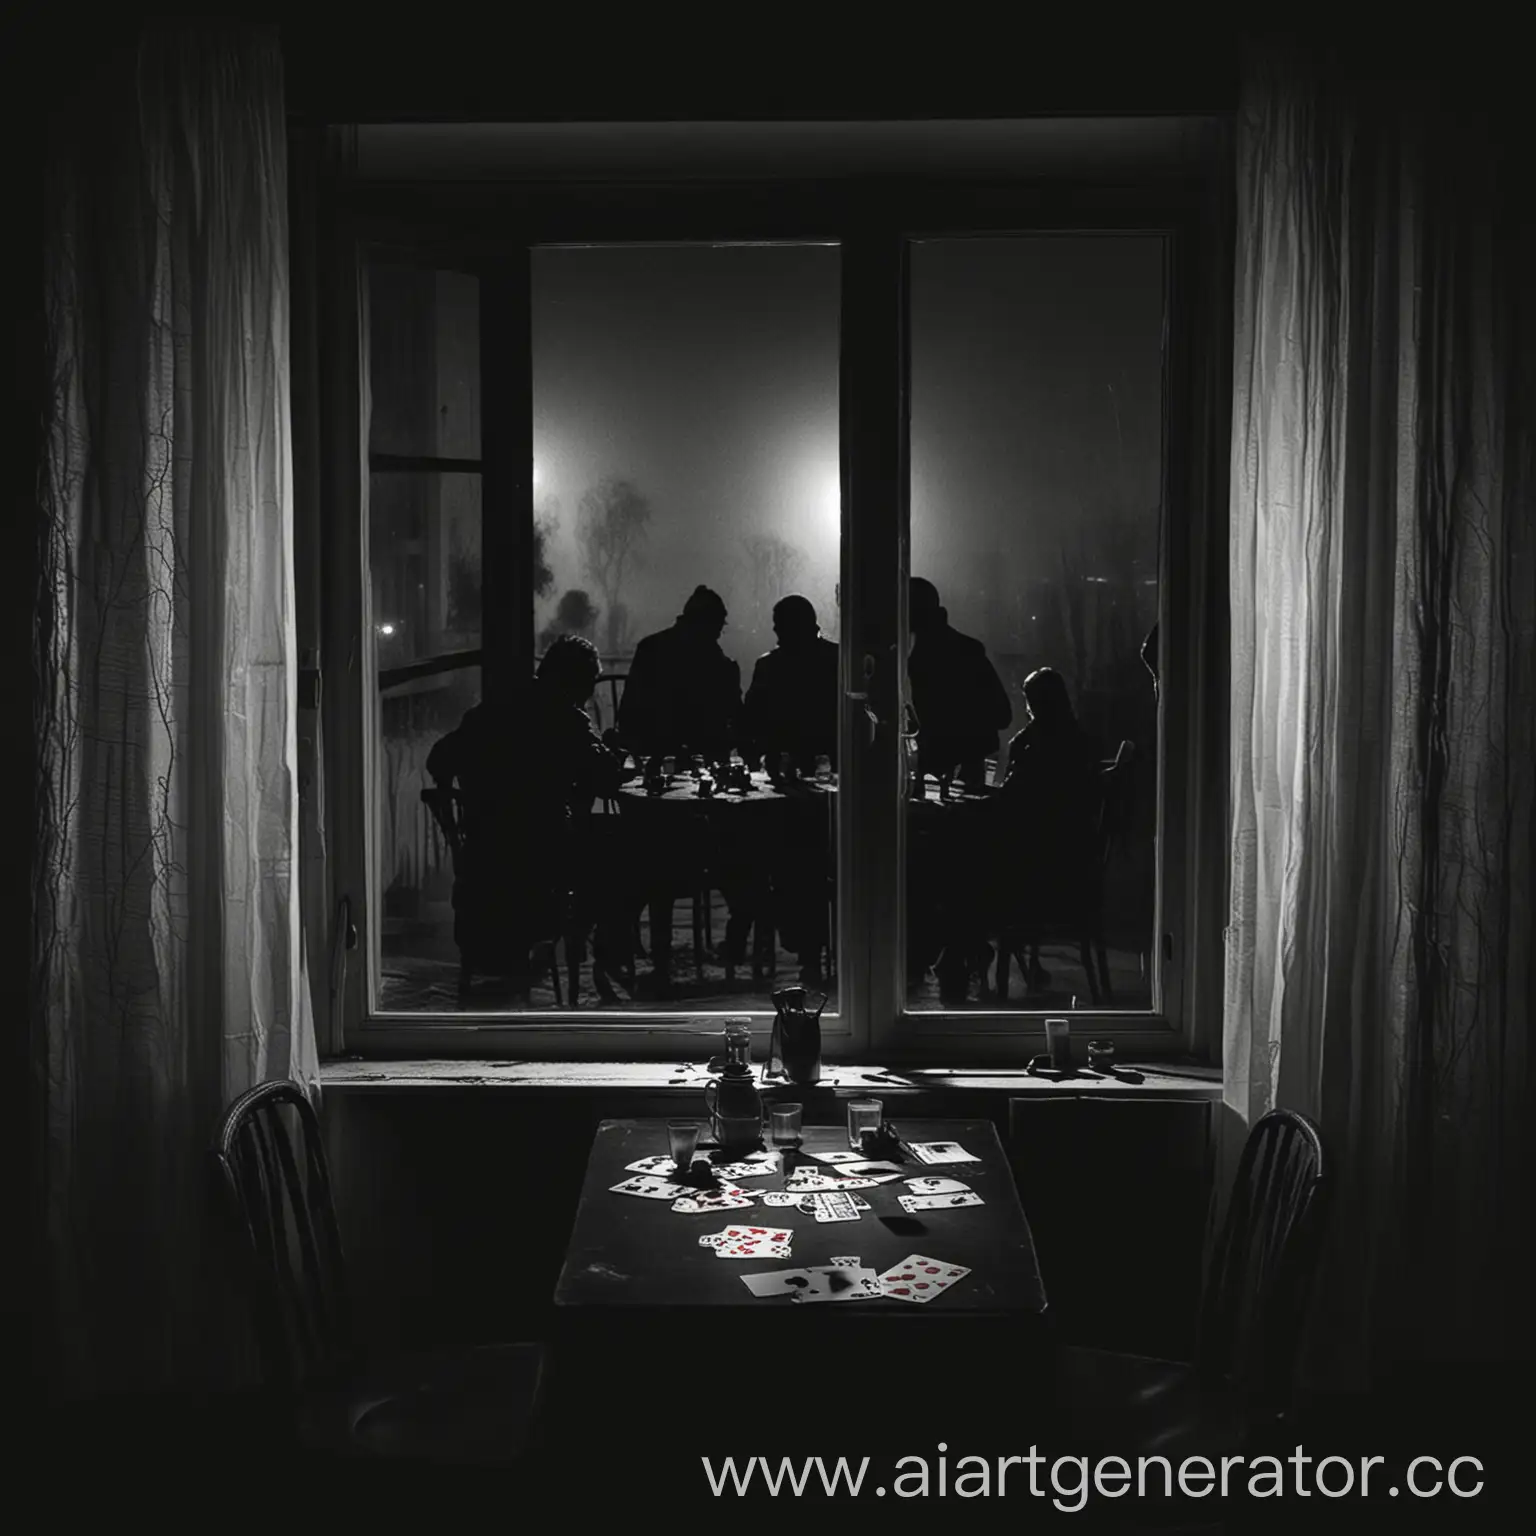 Темная зимняя ночь за окном, тени людей сидят за столом и играют в карты
